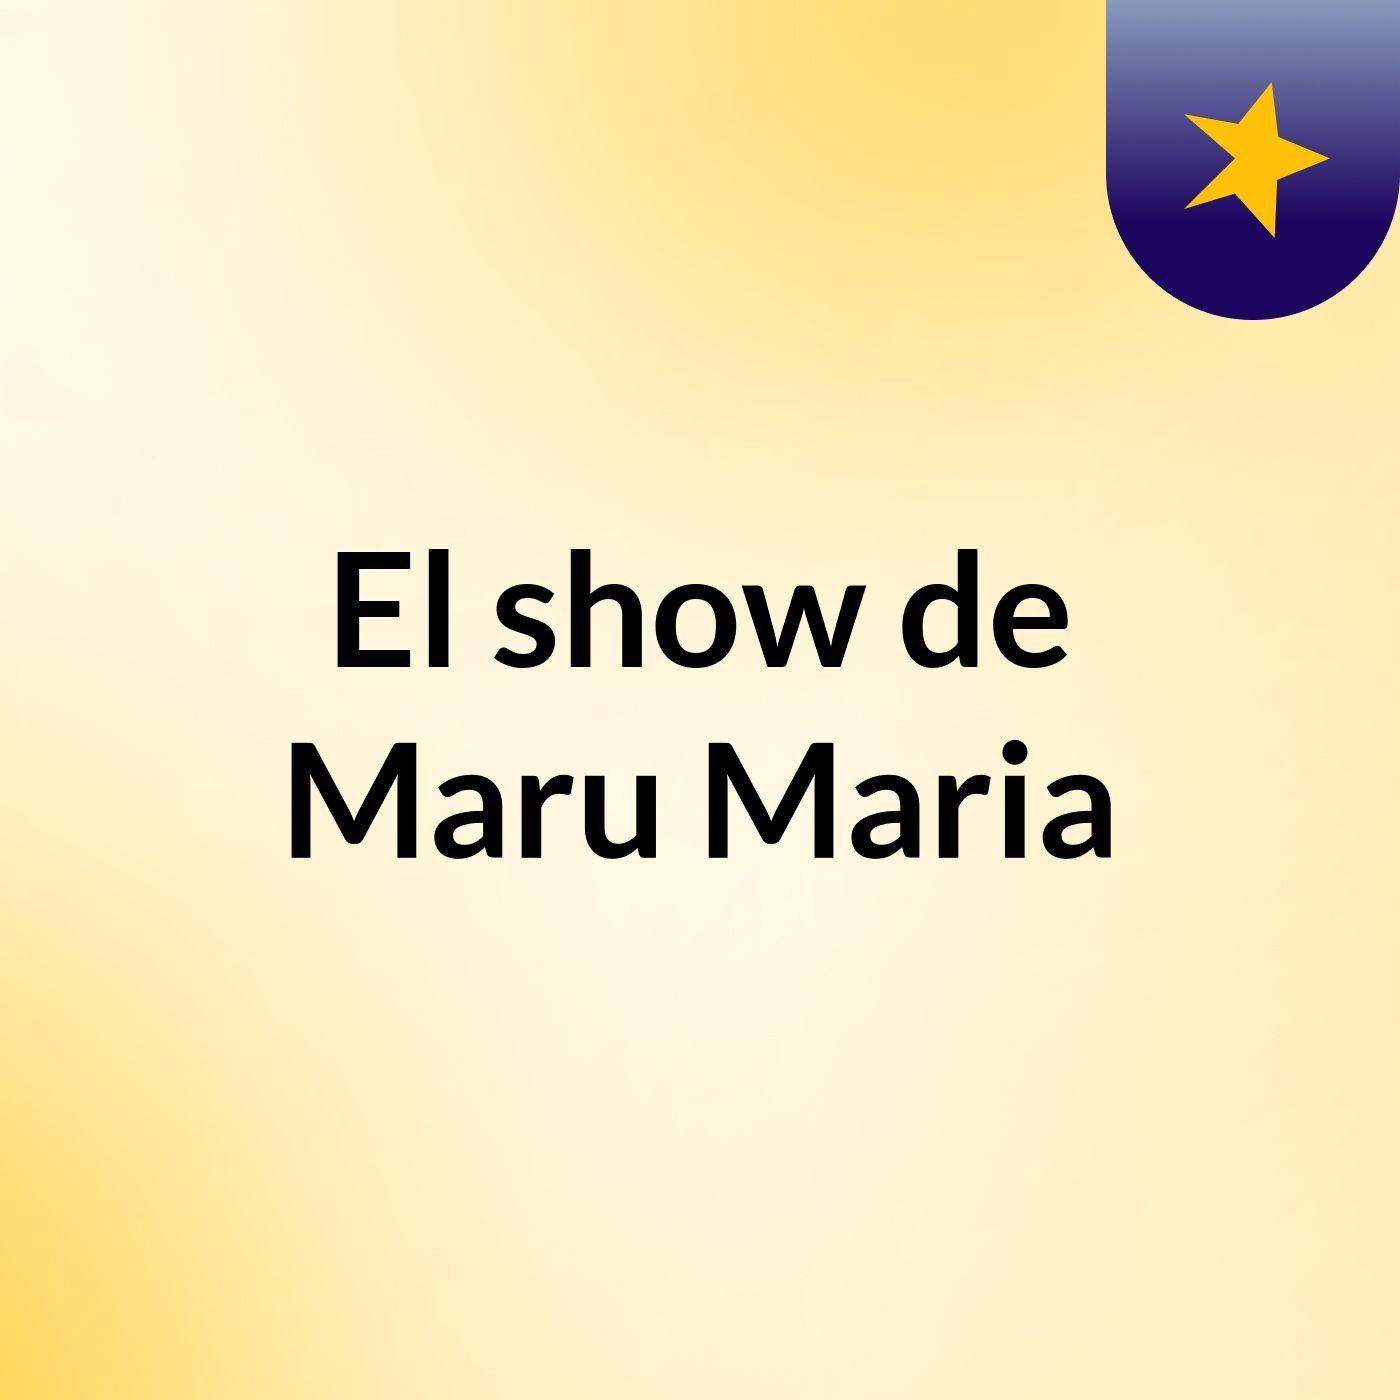 El show de Maru Maria